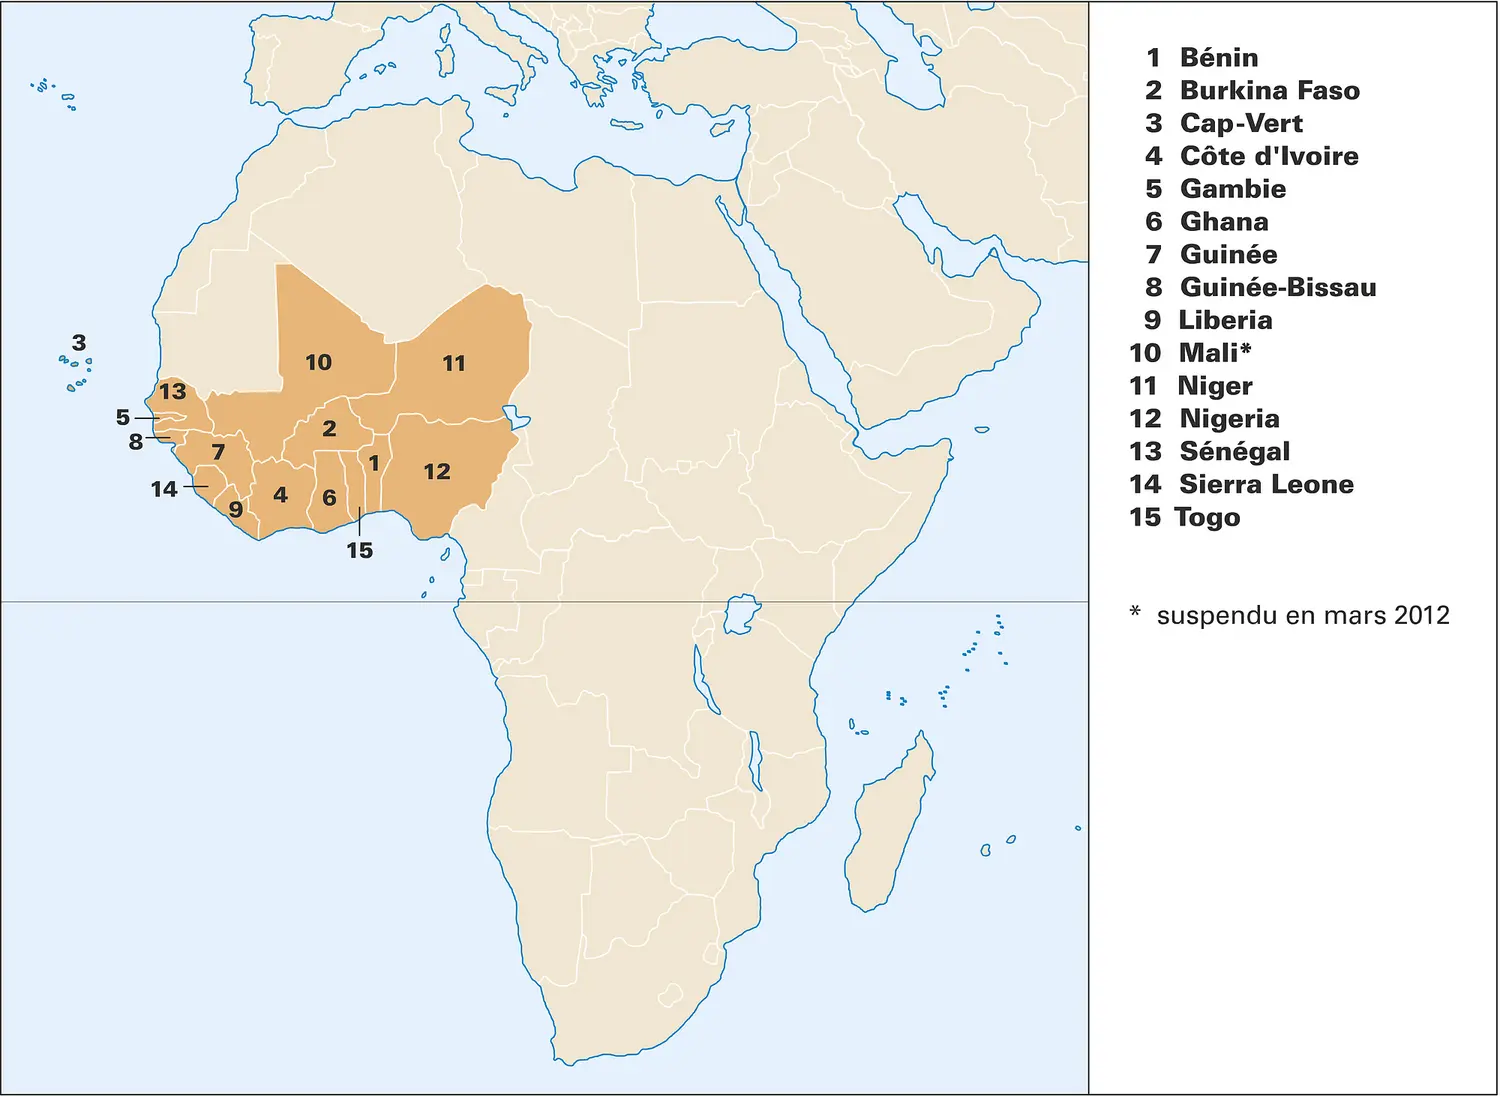 CEDEAO (Communauté économique des États de l'Afrique de l'Ouest)